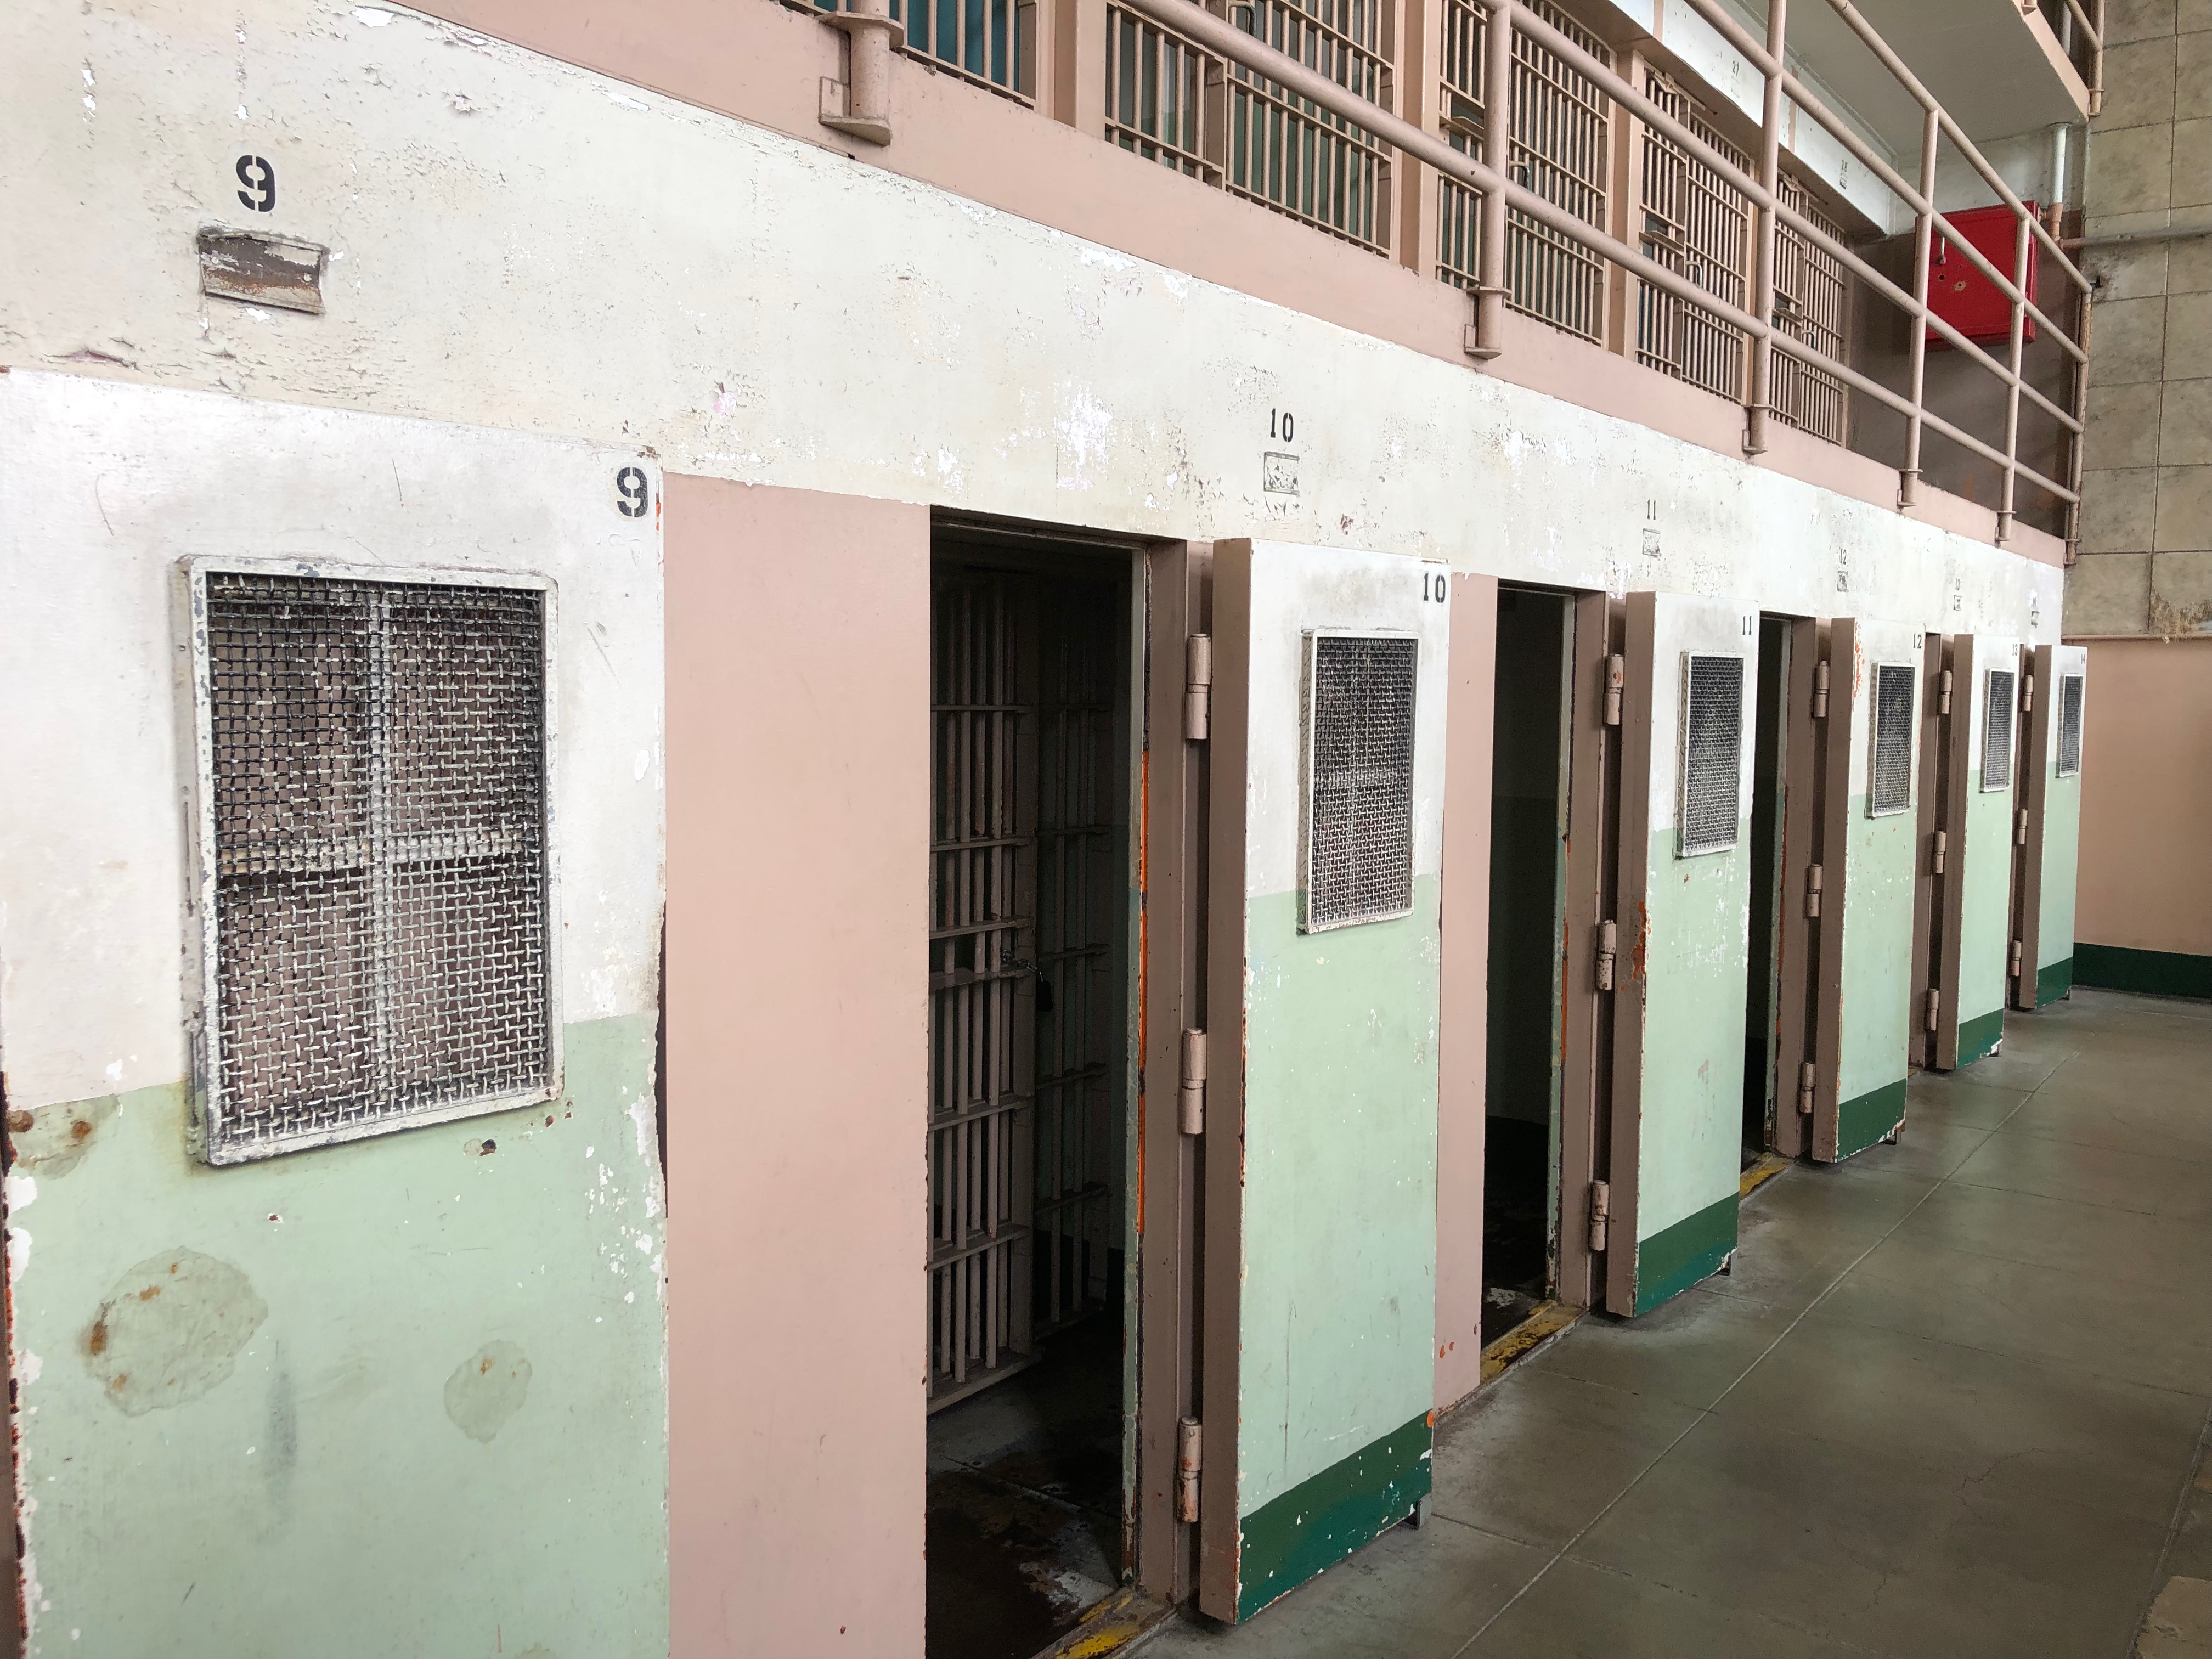 Zellen in Alcatraz